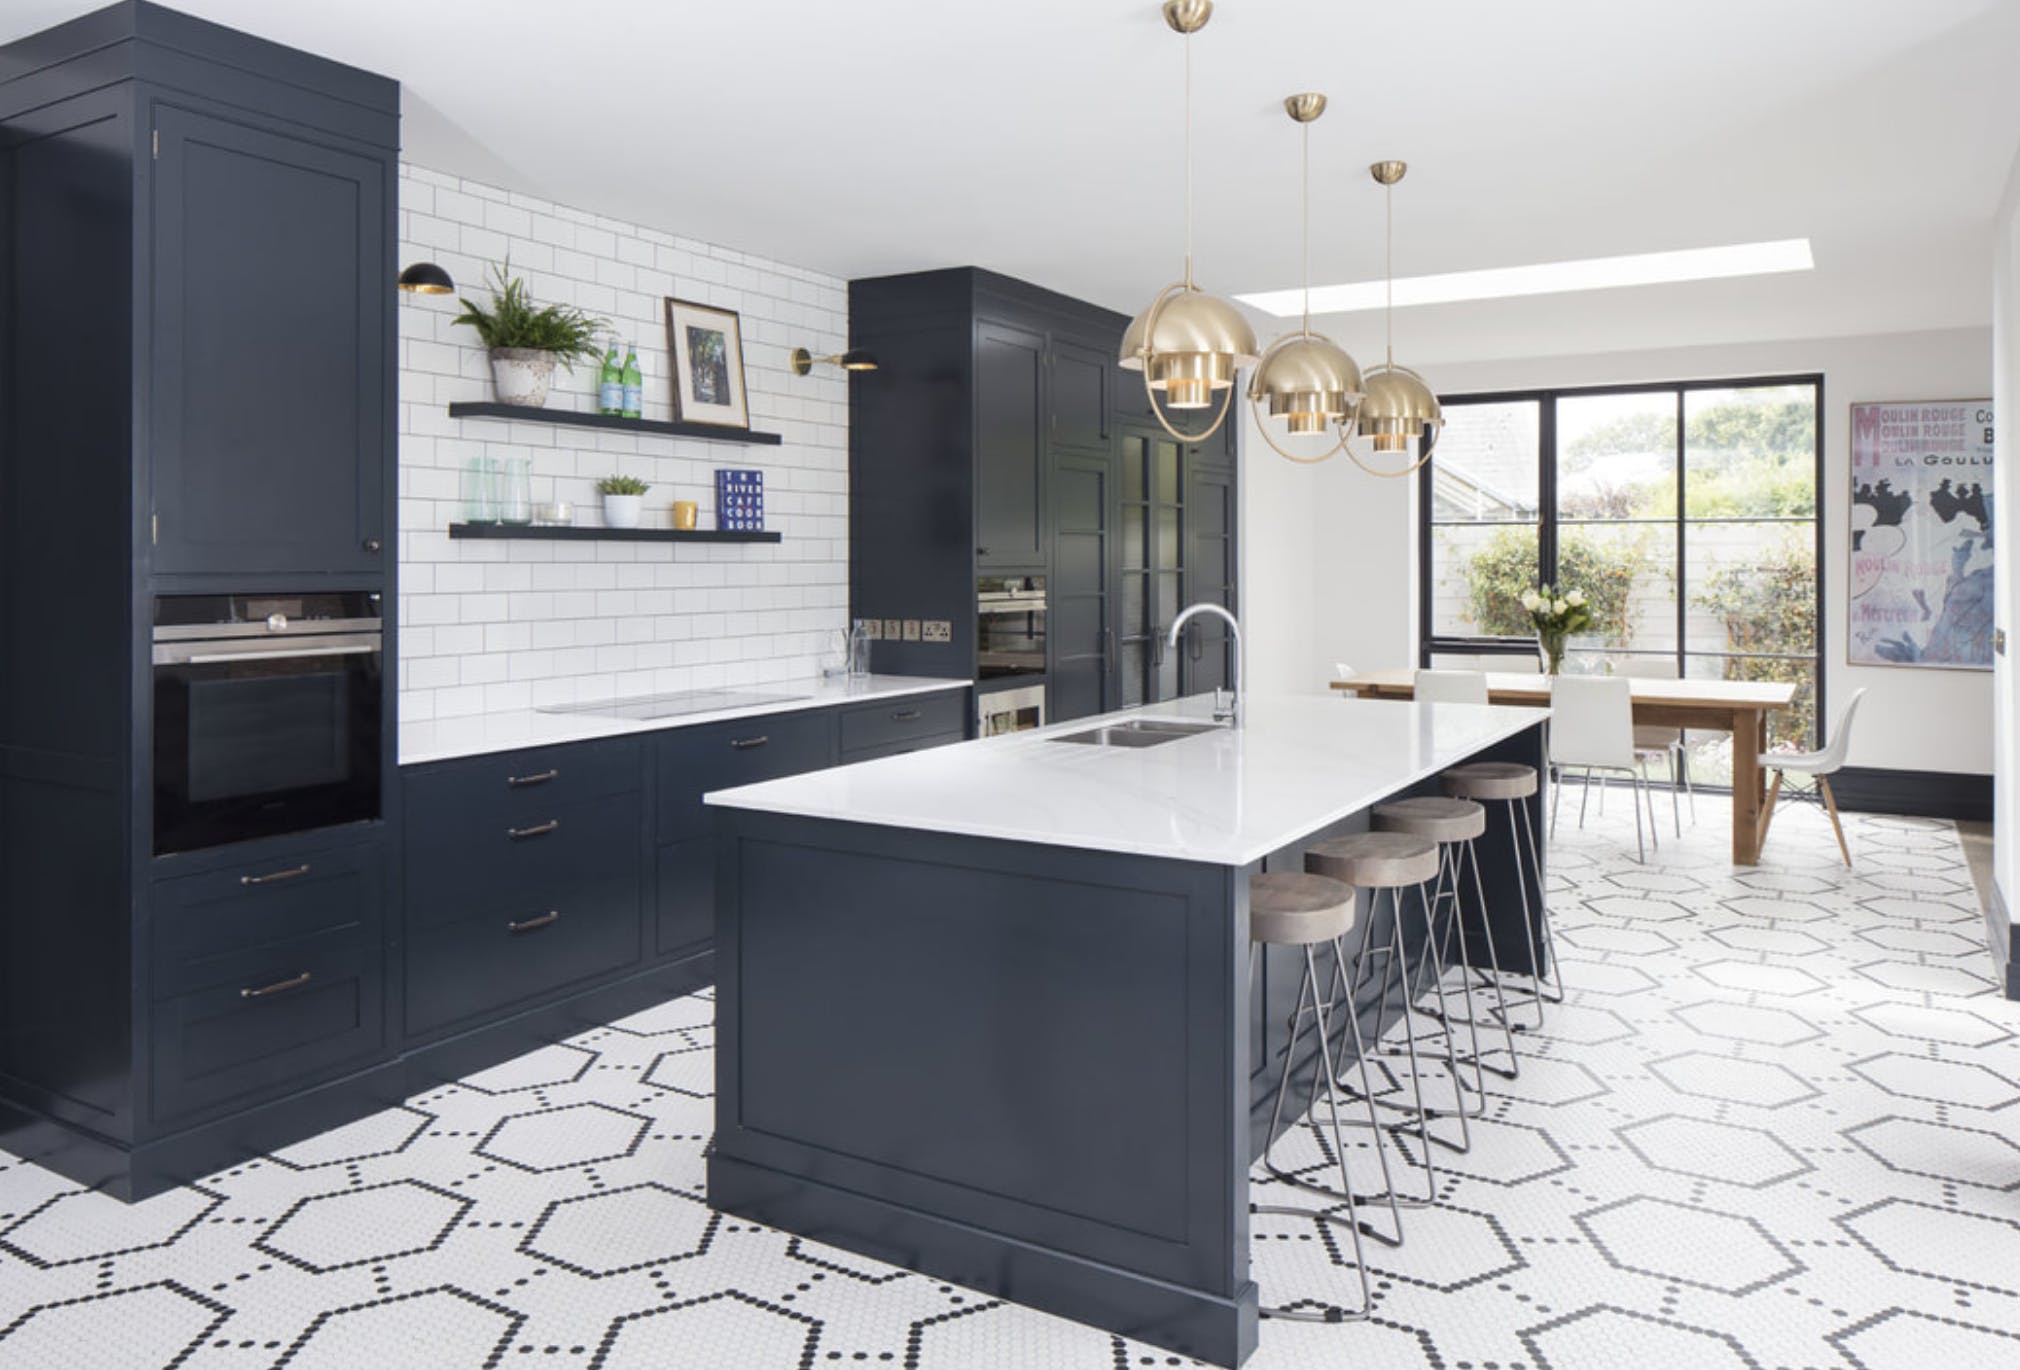 Kitchen design - navy Shaker style kitchen with white worktops